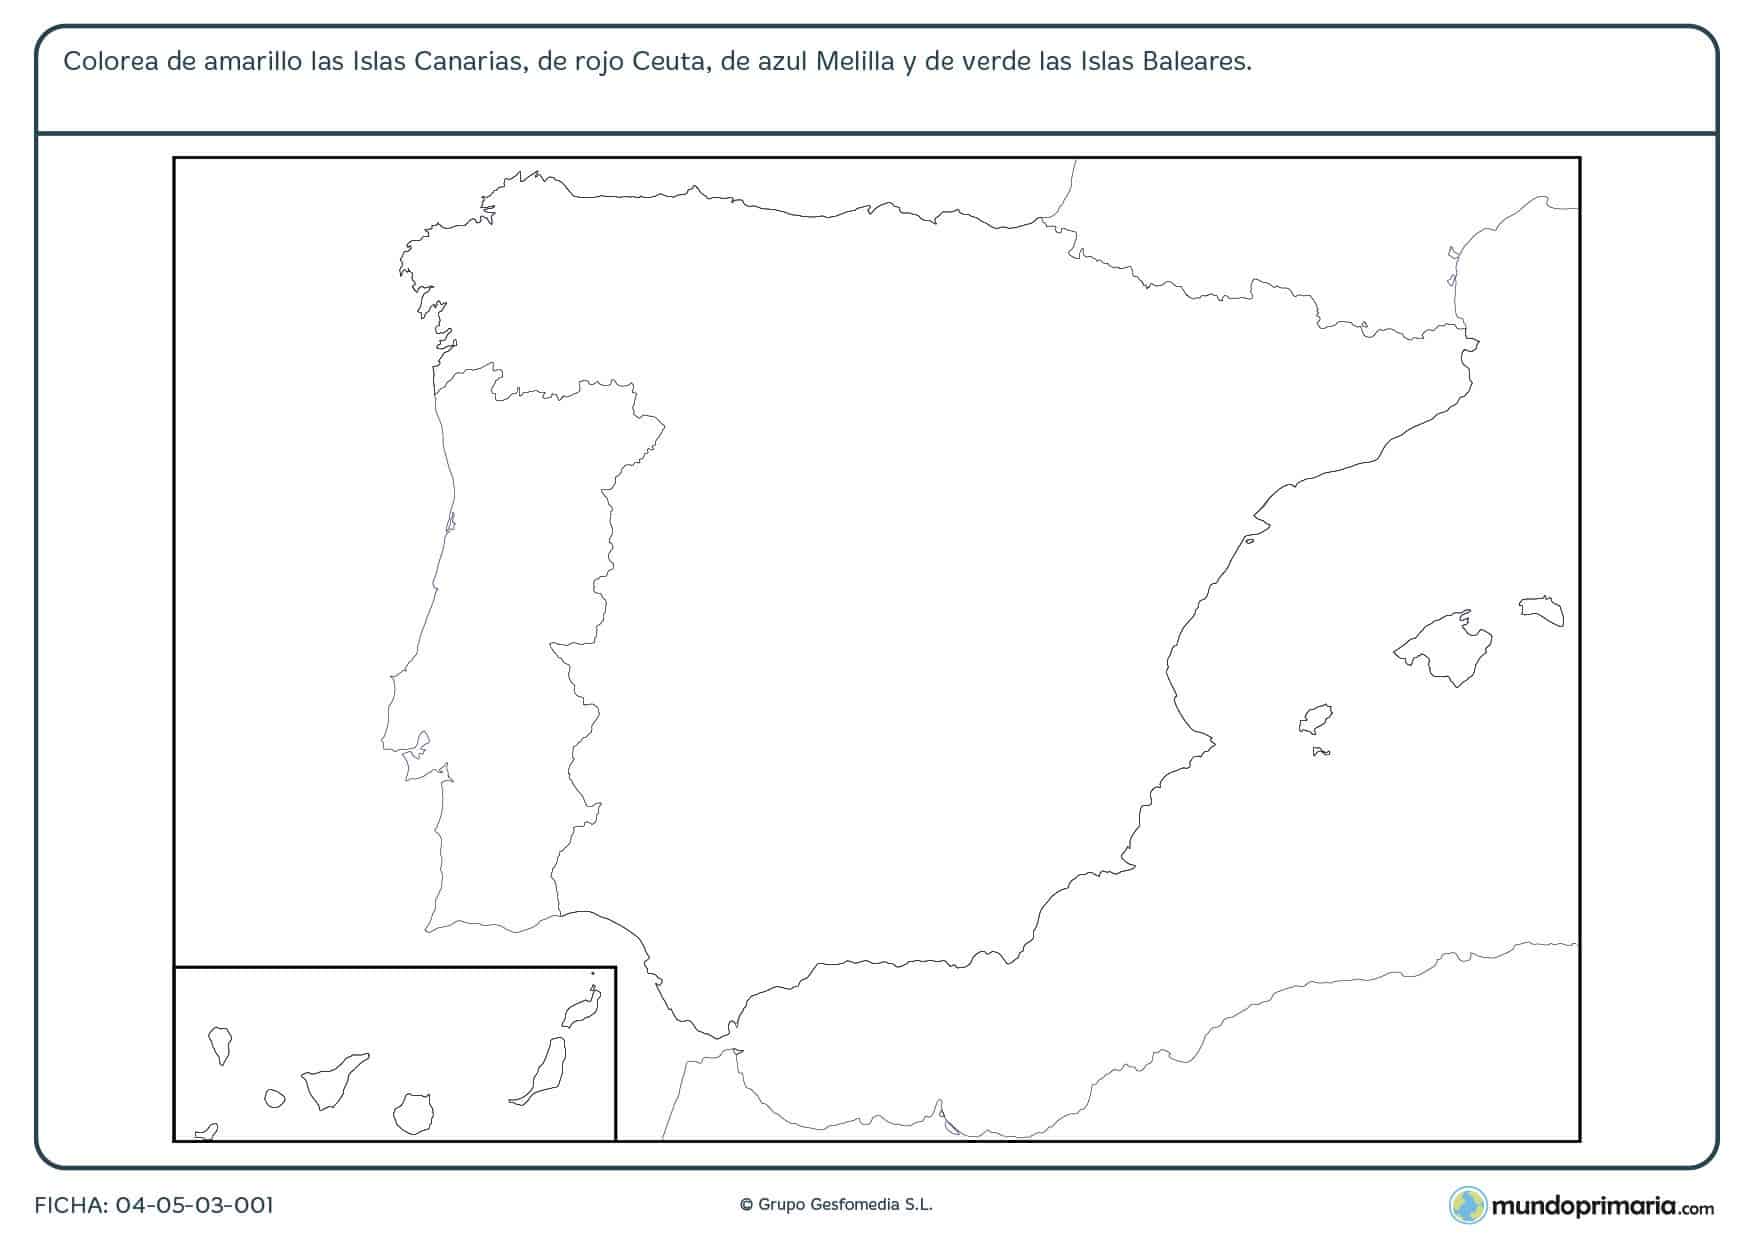 Ficha de colorear zonas de España en la que debes colorear las zonas de España que están fuera de la Península Ibérica.